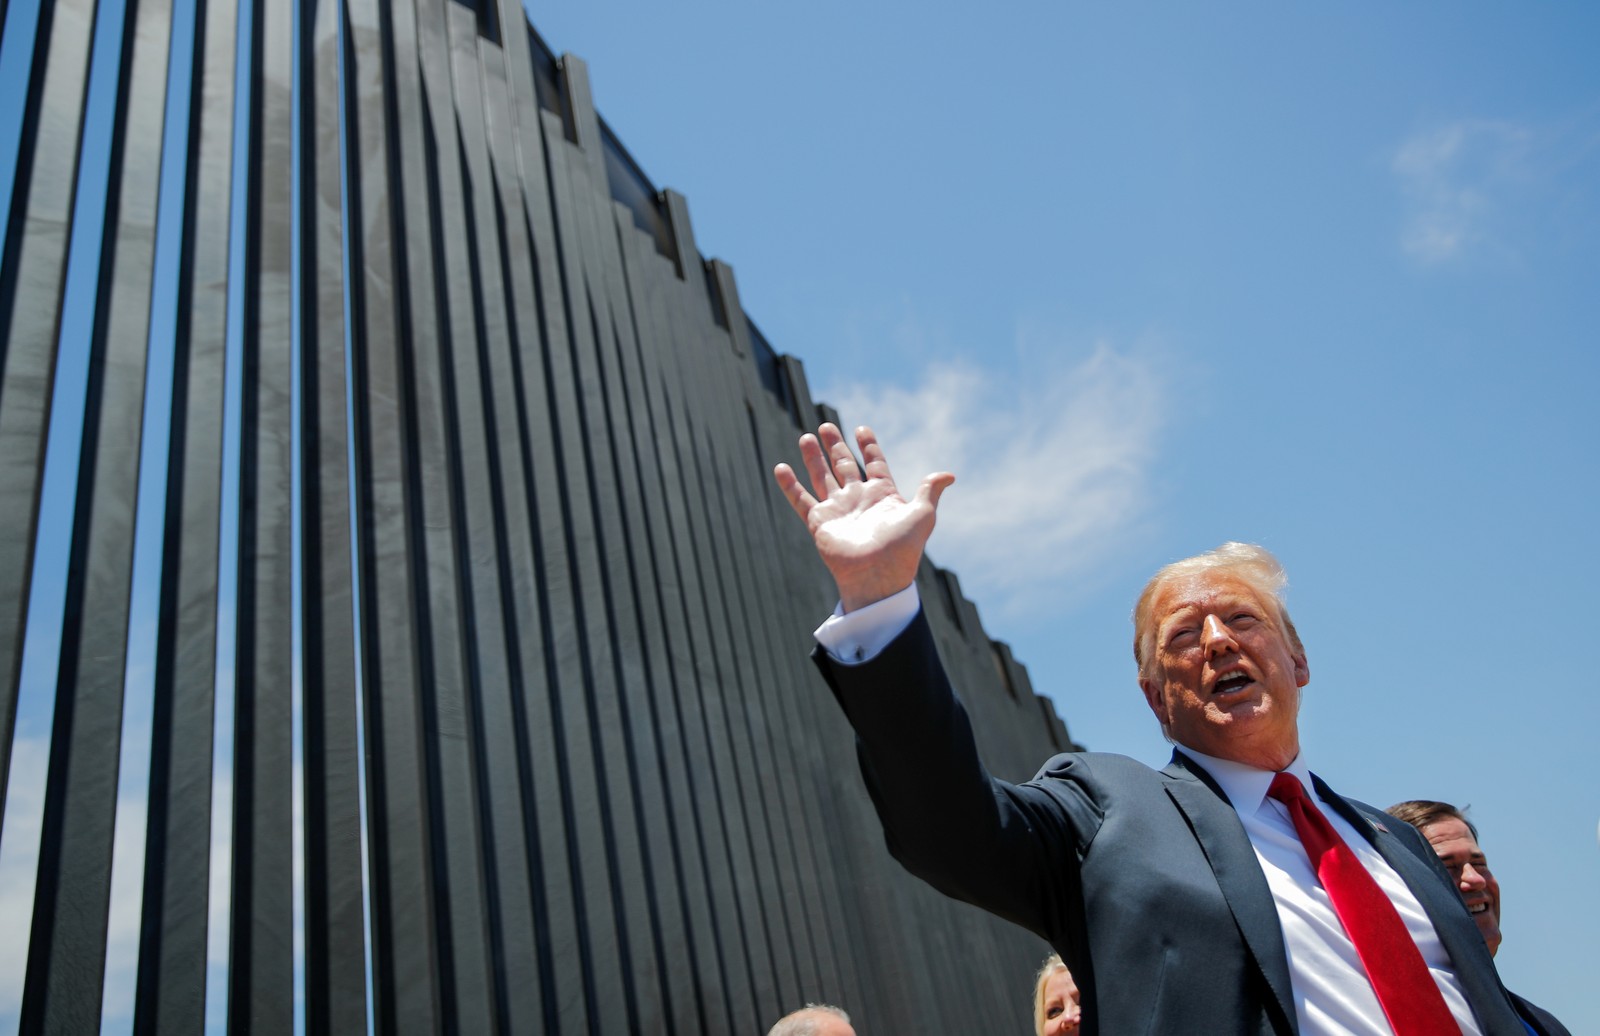 Trump visita muro na fronteira com o México antes de comício no ArizonaReuters - 23/06/2020